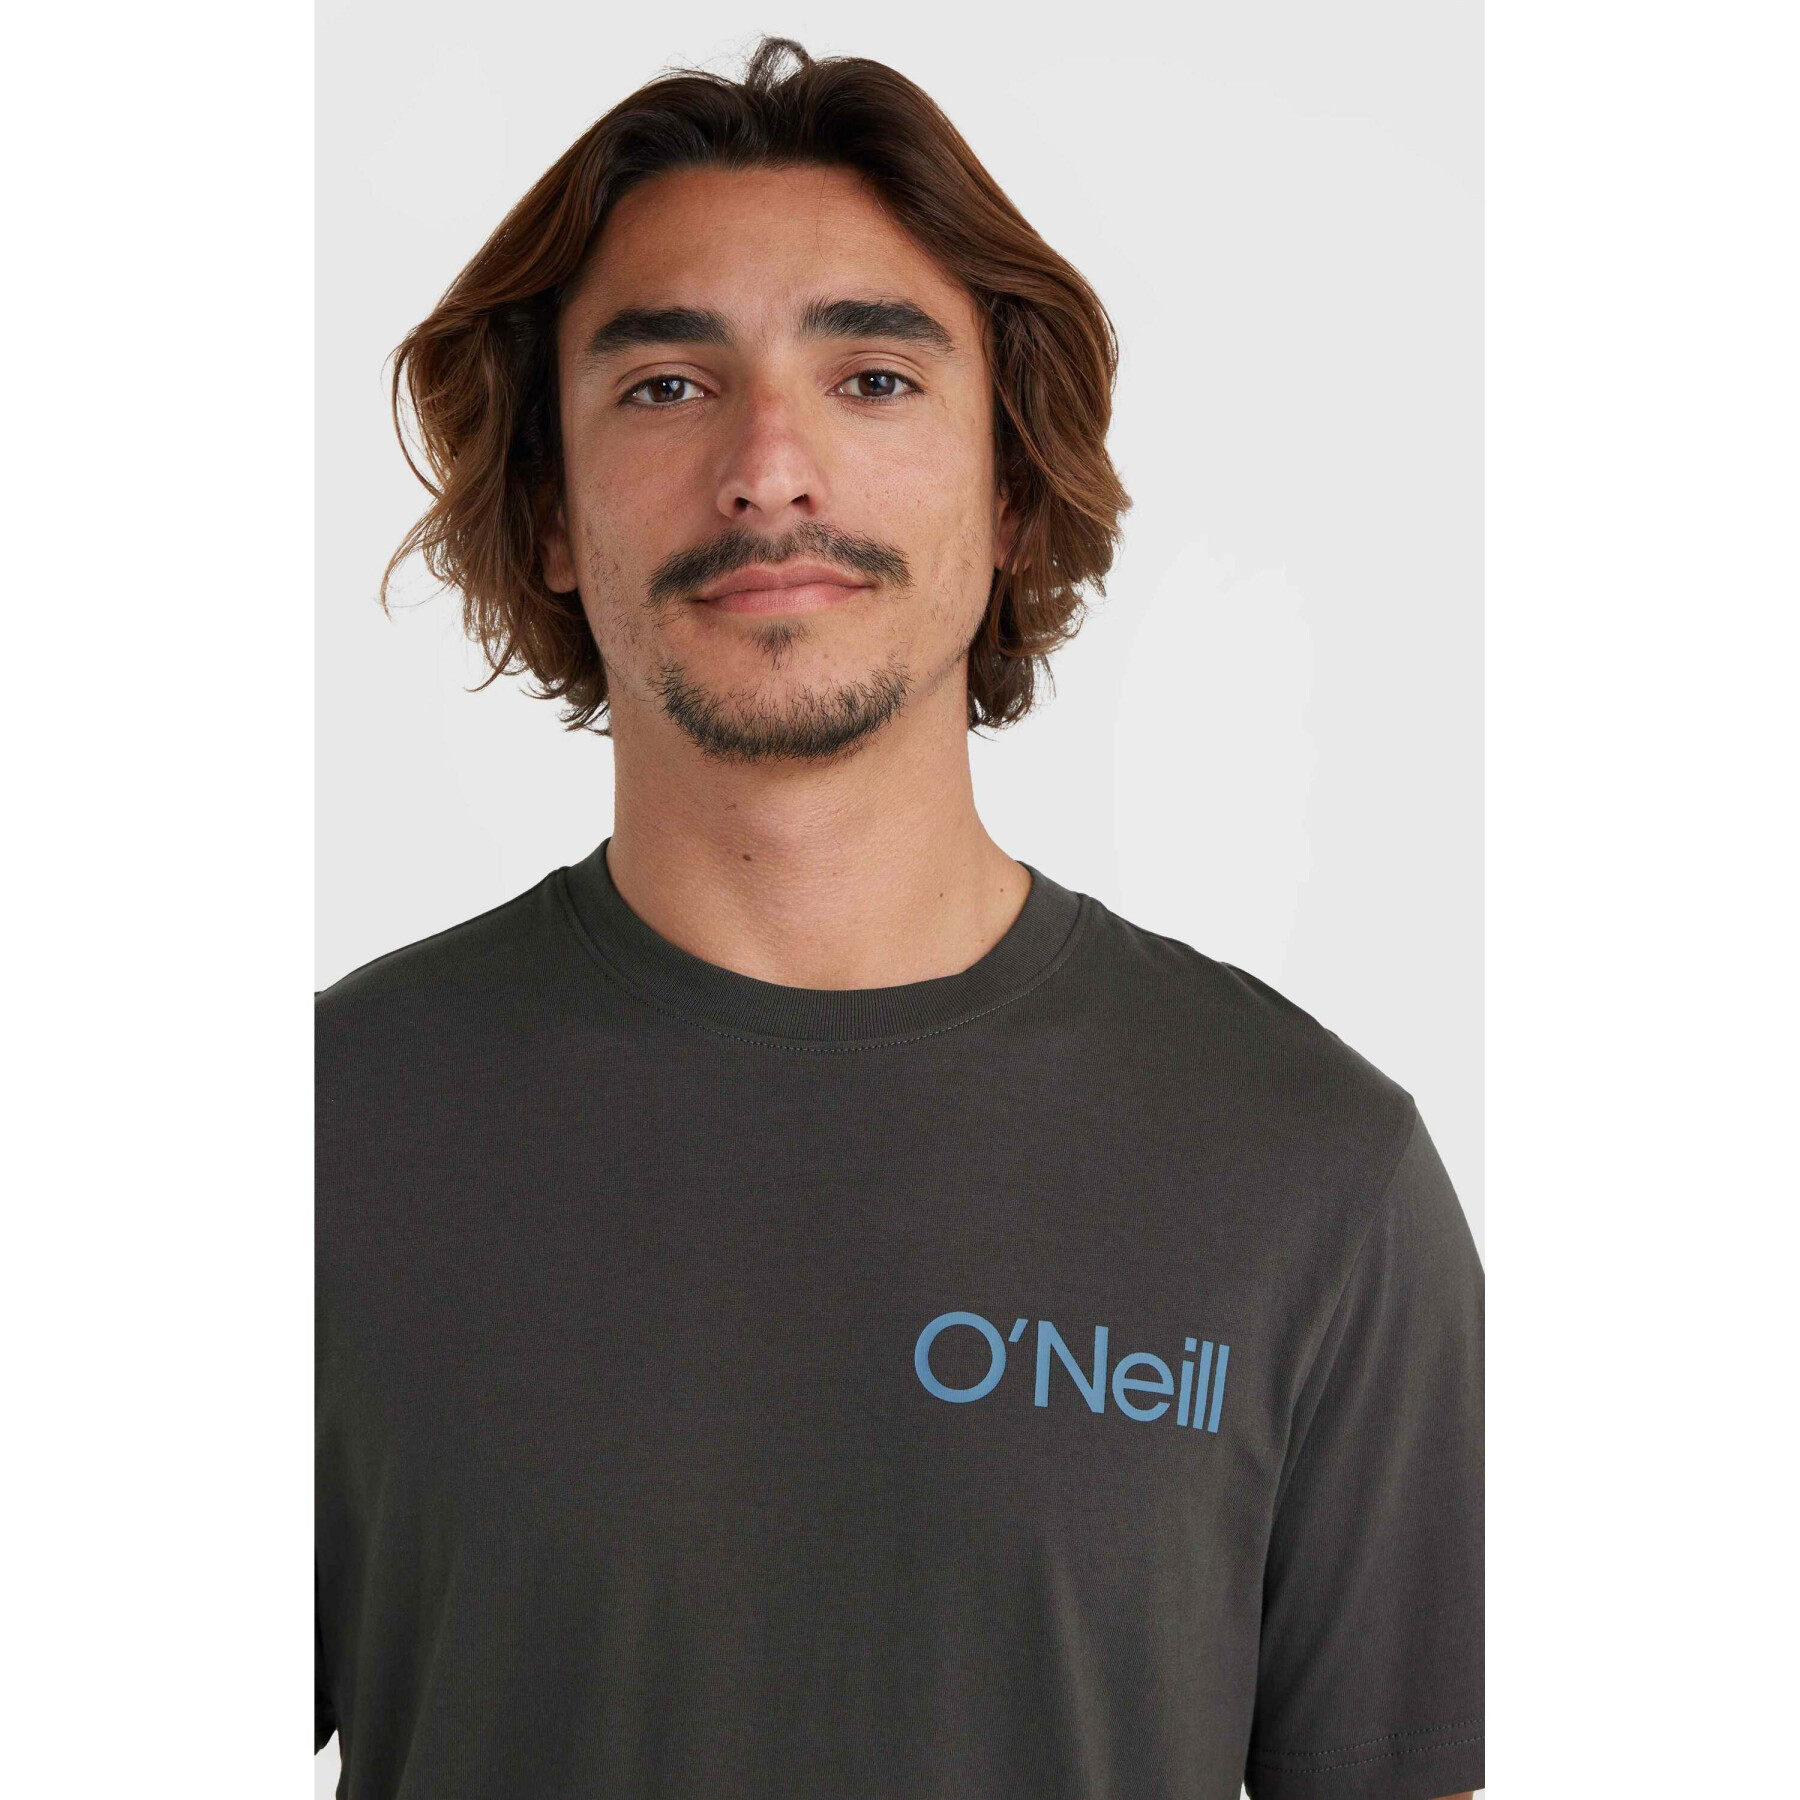 T-shirt O'Neill O'riginal Tres